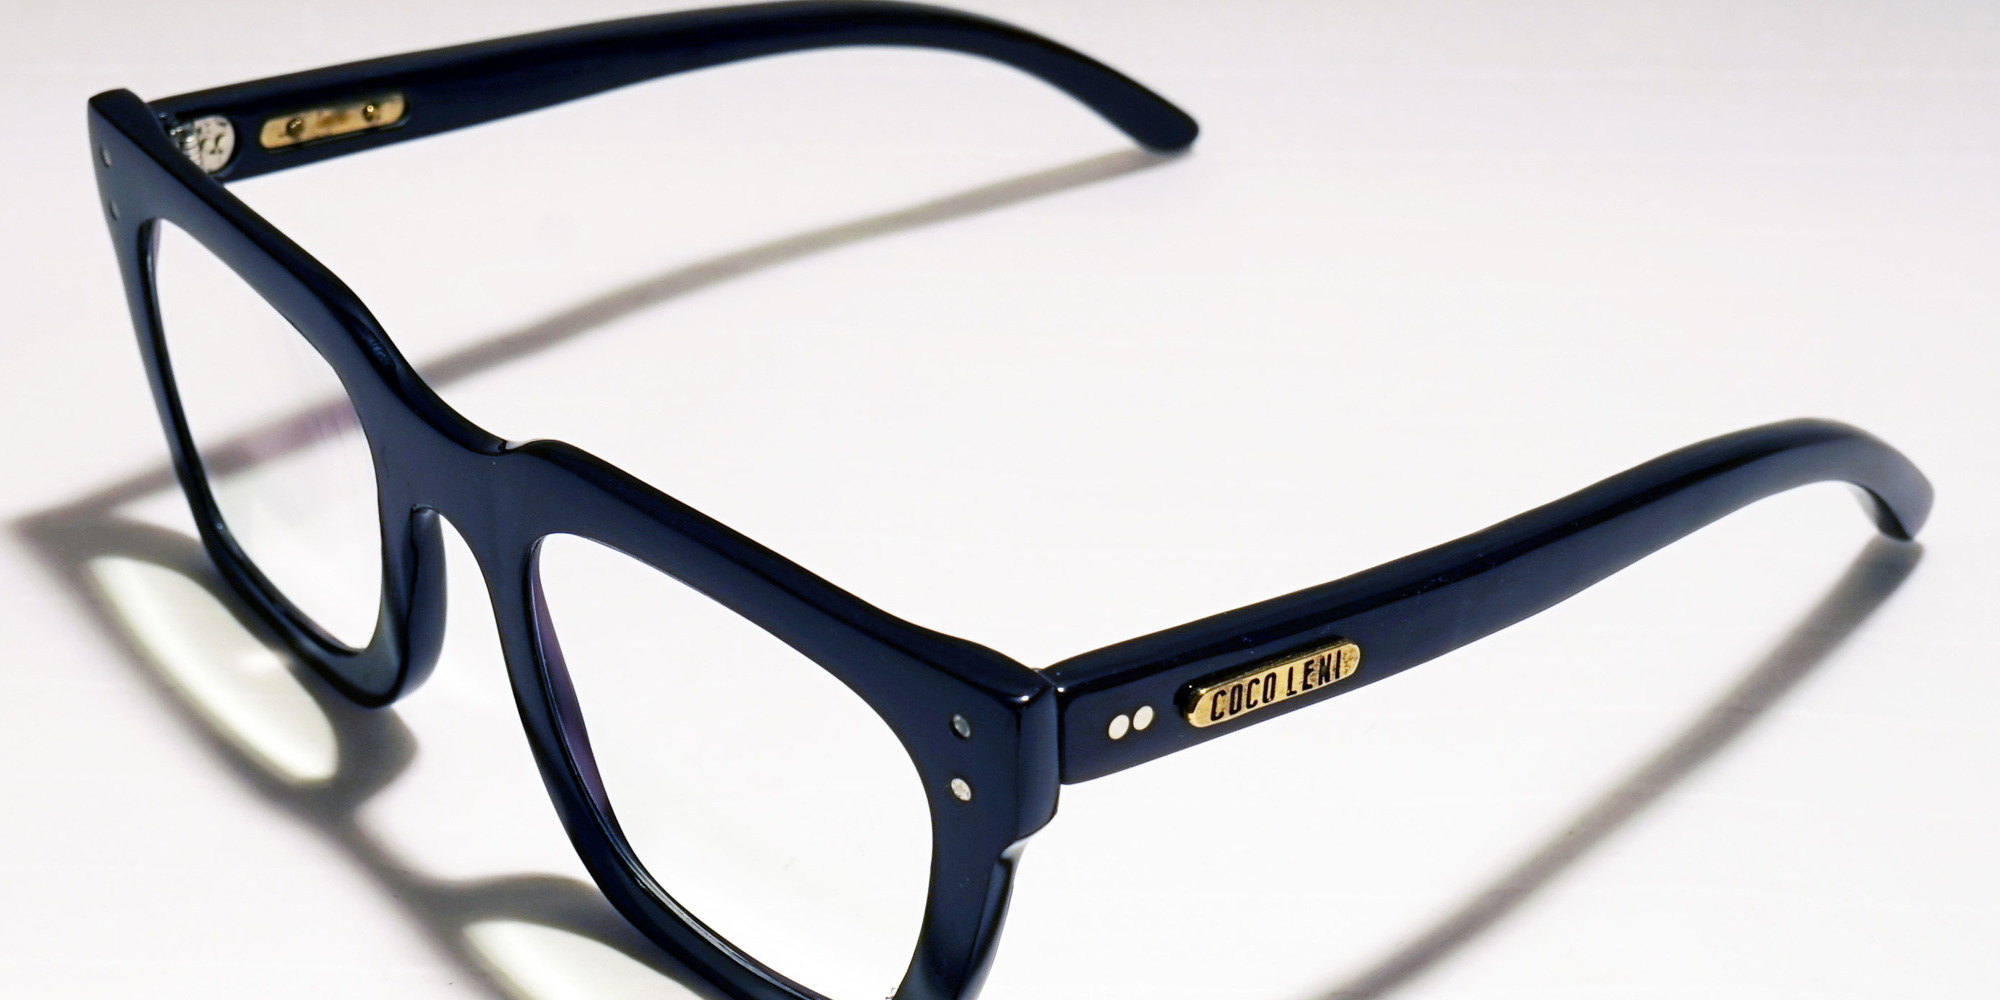 Starke Black 13739 Eyeglasses $129.00. Rectangular | Male | Buffalo Horn